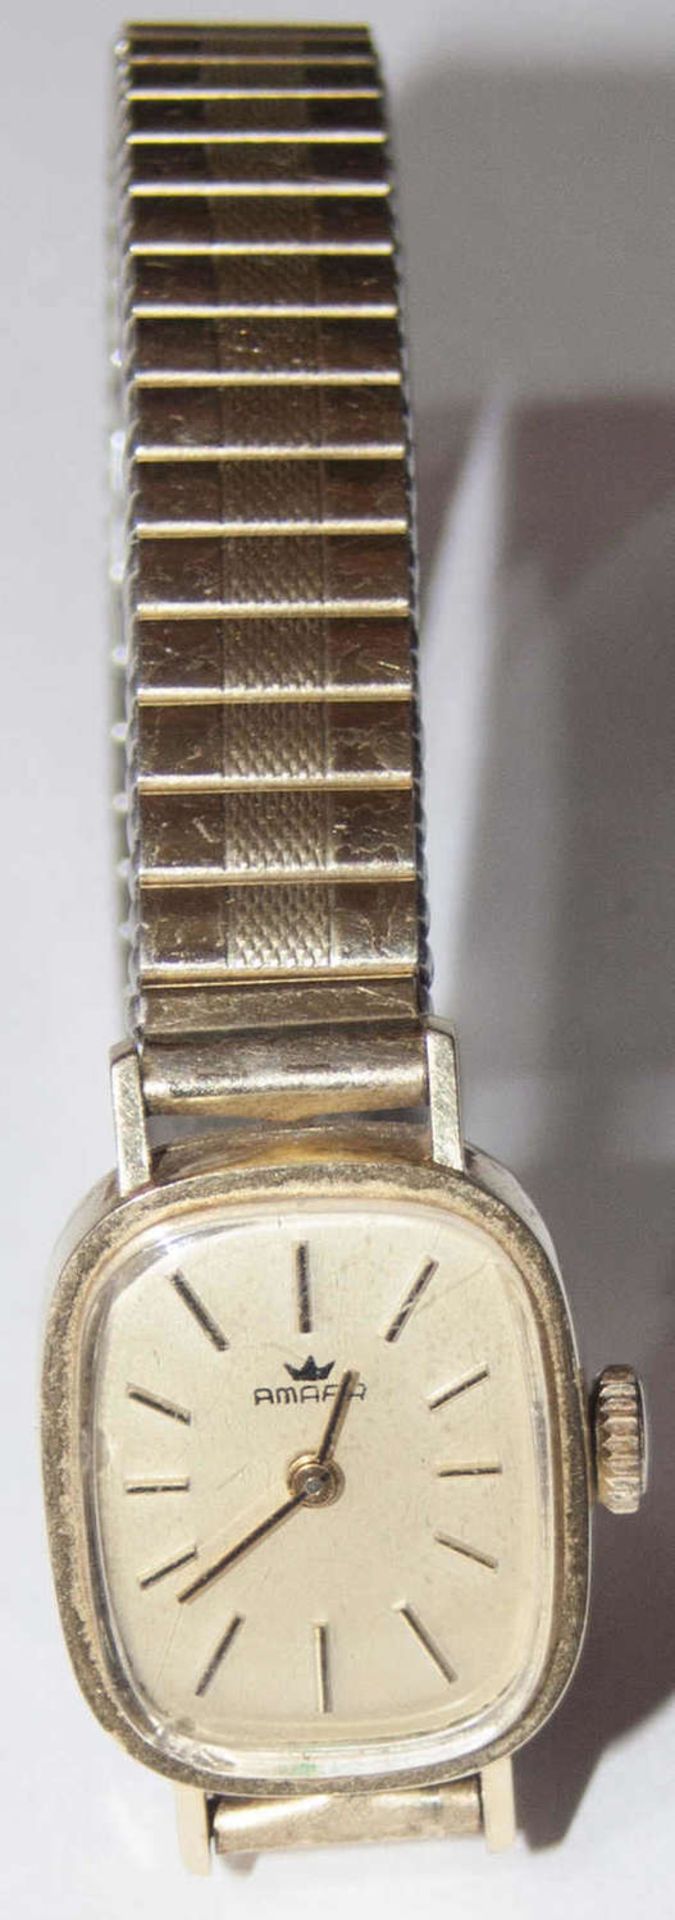 Damenarmbanduhren, Amara, 585er Goldgehäuse mit Flexarmband.Ladies' wristwatches, Amara, 585 gold